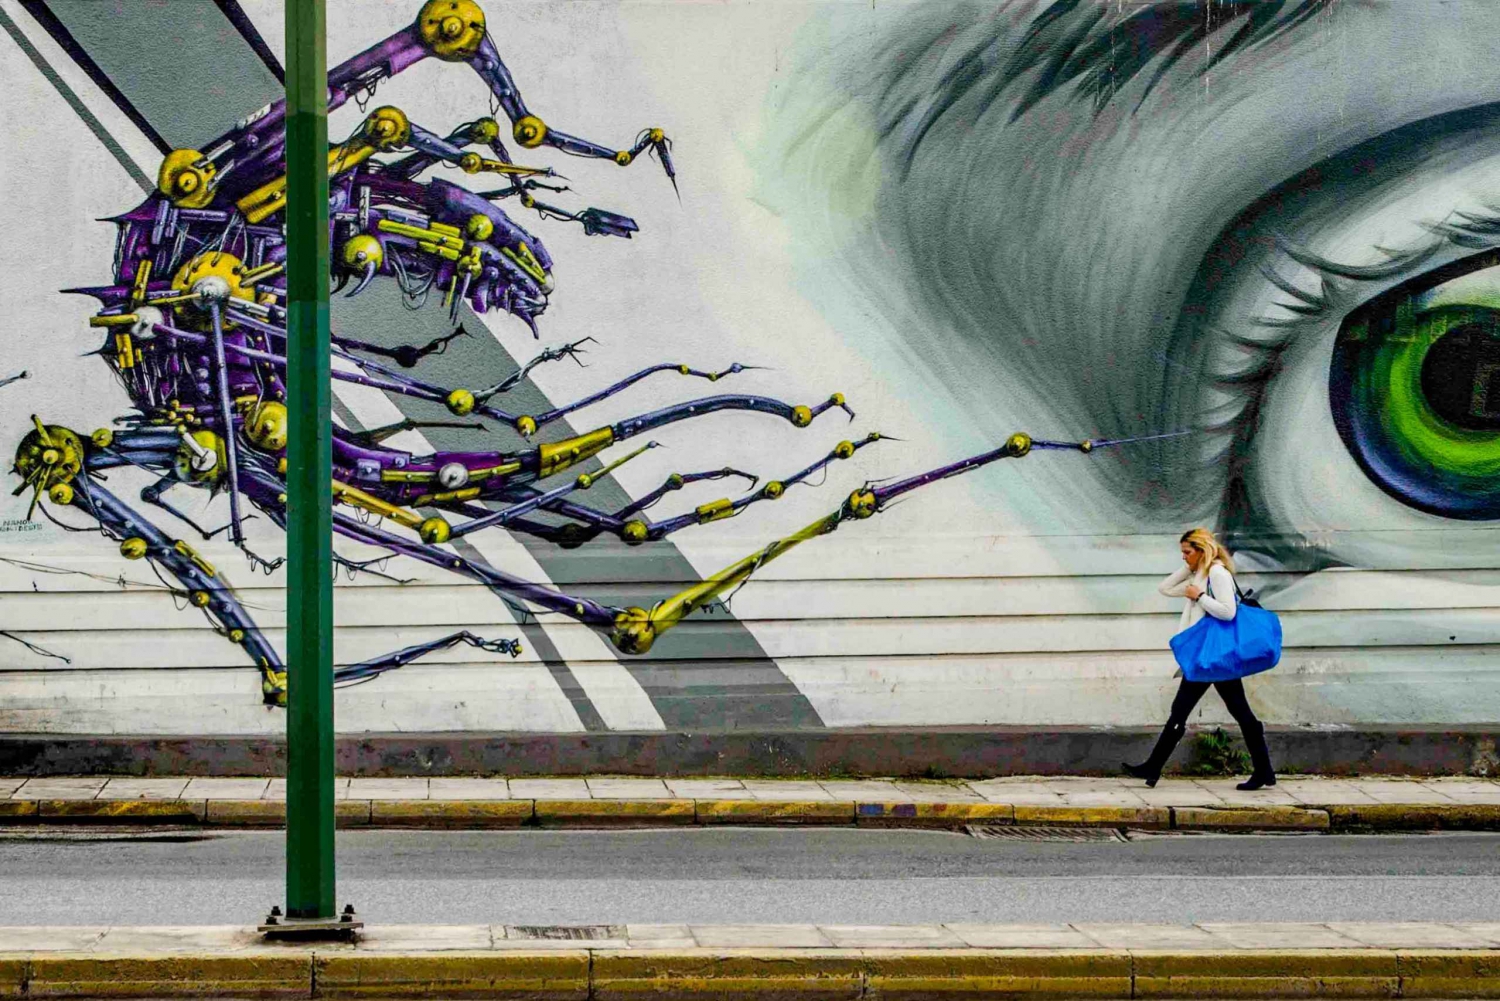 Athene: Ervaar de straatkunst met een kunstenaarsgids